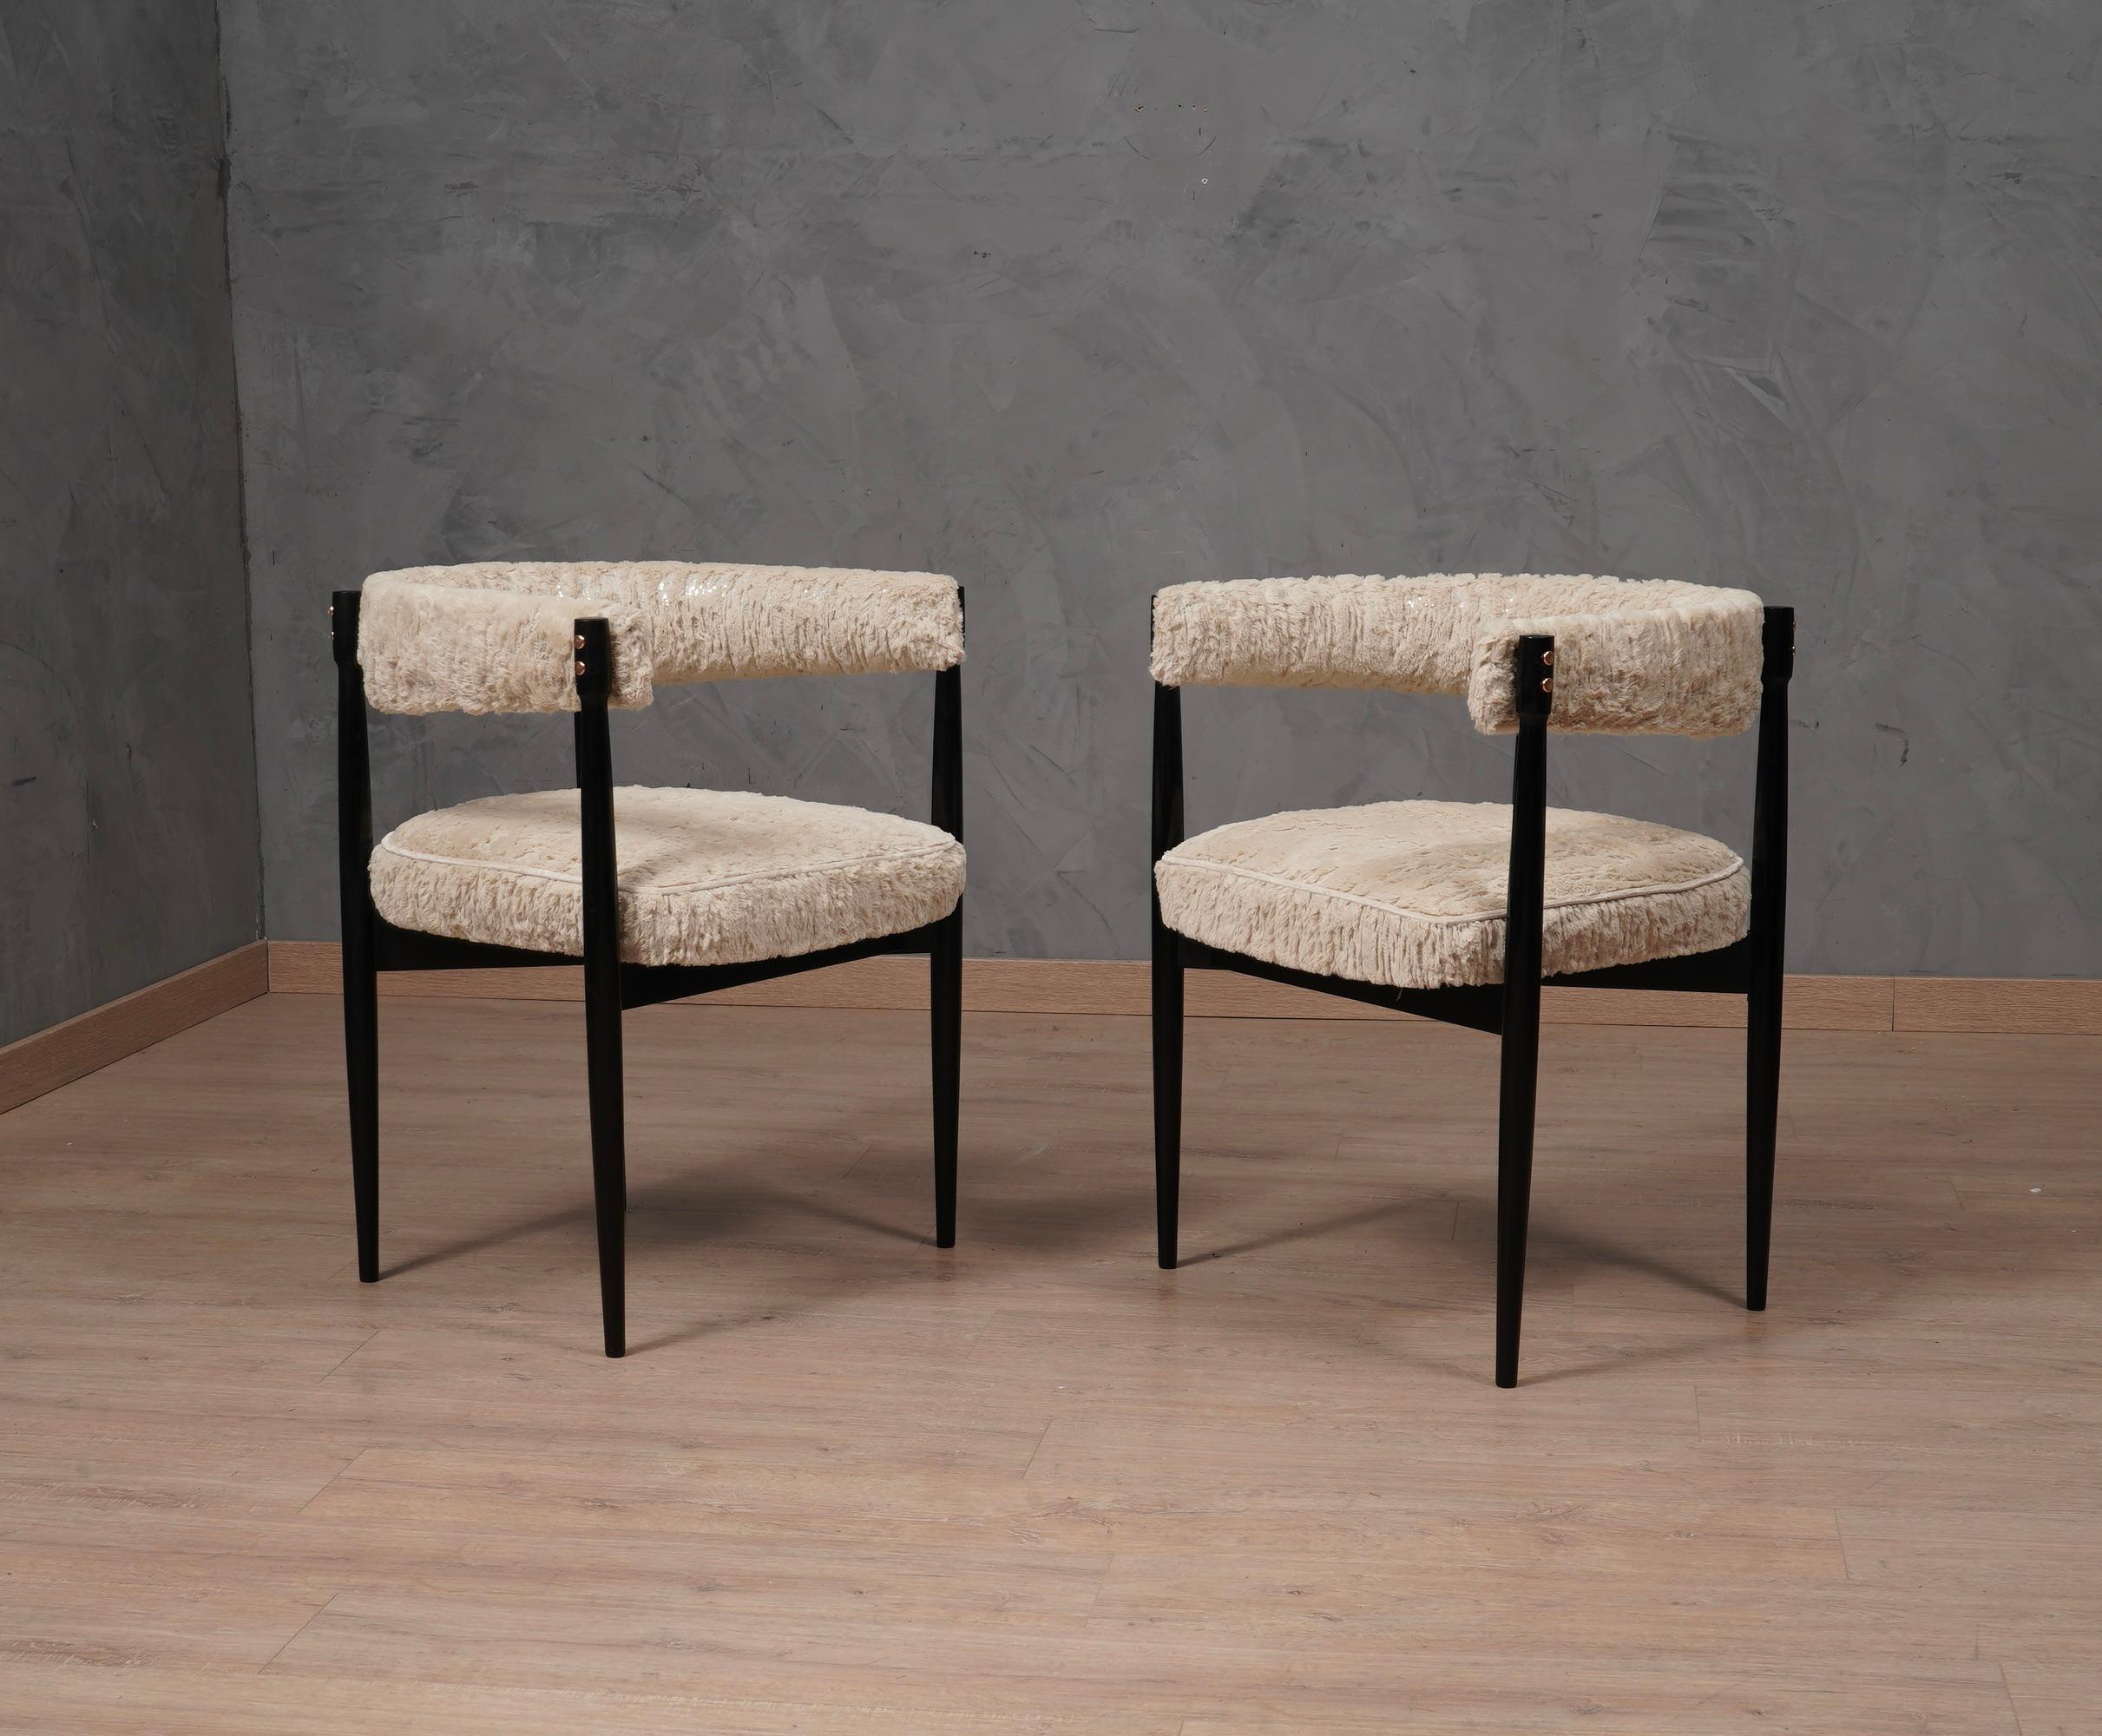 Charakteristische und edle italienische Sessel aus schwarz lackierter Buche, mit kleinen Kupfereinsätzen, die mit einem schönen weiß-silbernen Stoff kombiniert sind.

Die Sessel haben ein Gestell aus hellem Buchenholz, das mit schwarzem Schellack